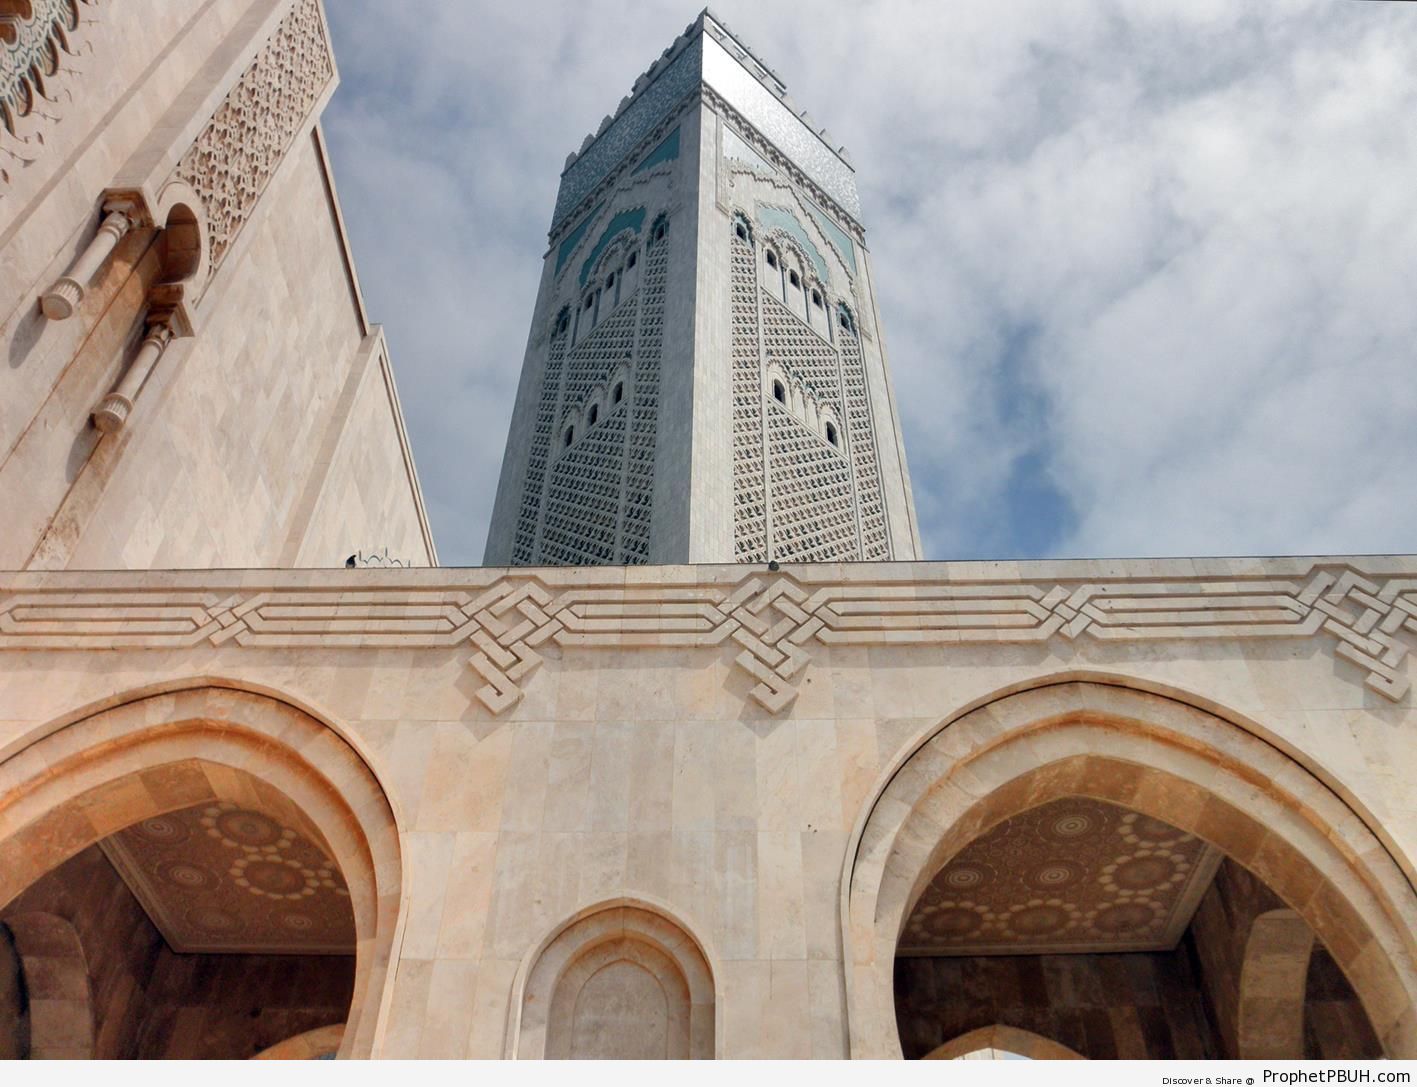 Square Minaret of Hassan II Mosque in Casablanca, Morocco - Casablanca, Morocco -Picture